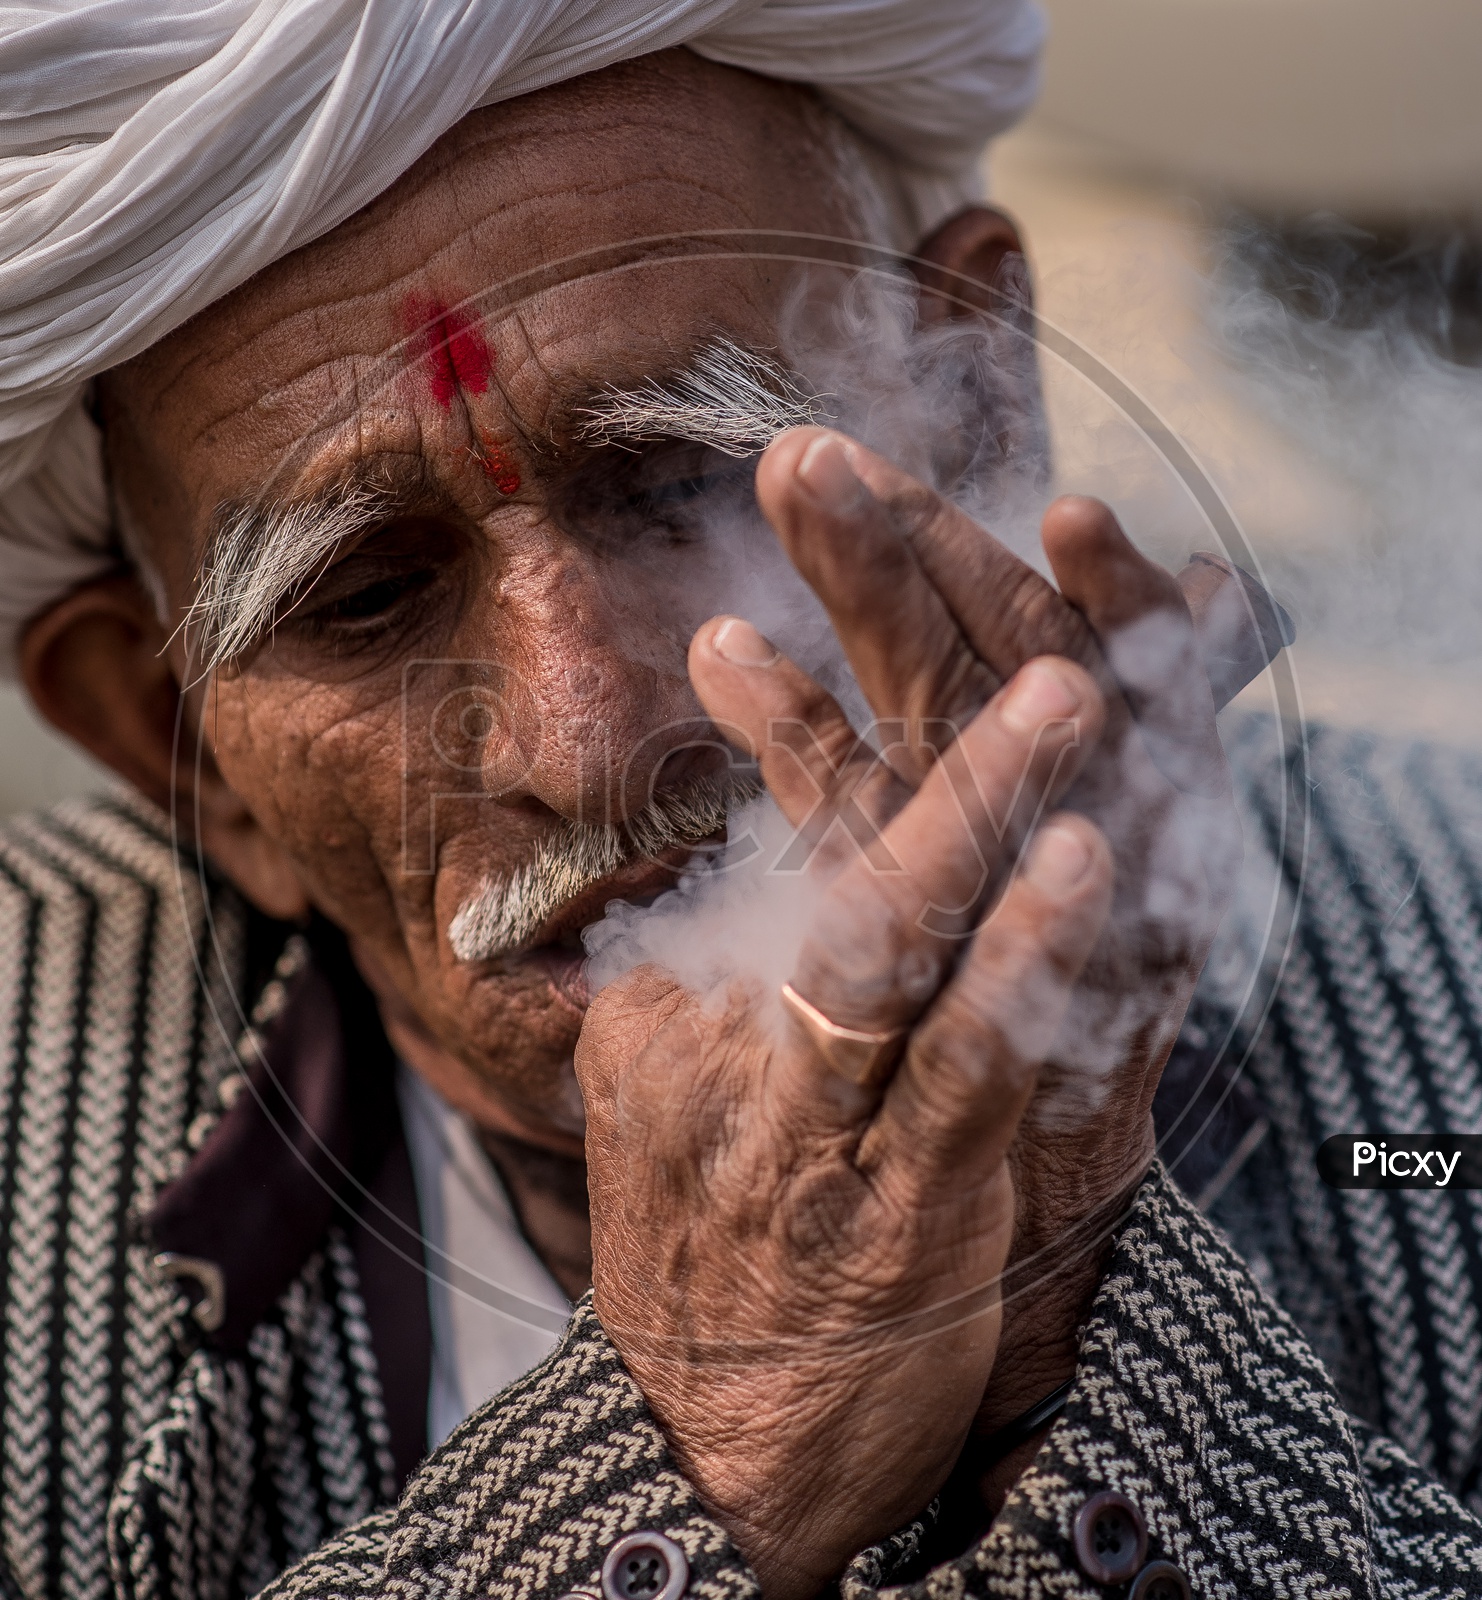 An Indian Old Man  Smoking  Ganja Or marijuanas  or weed